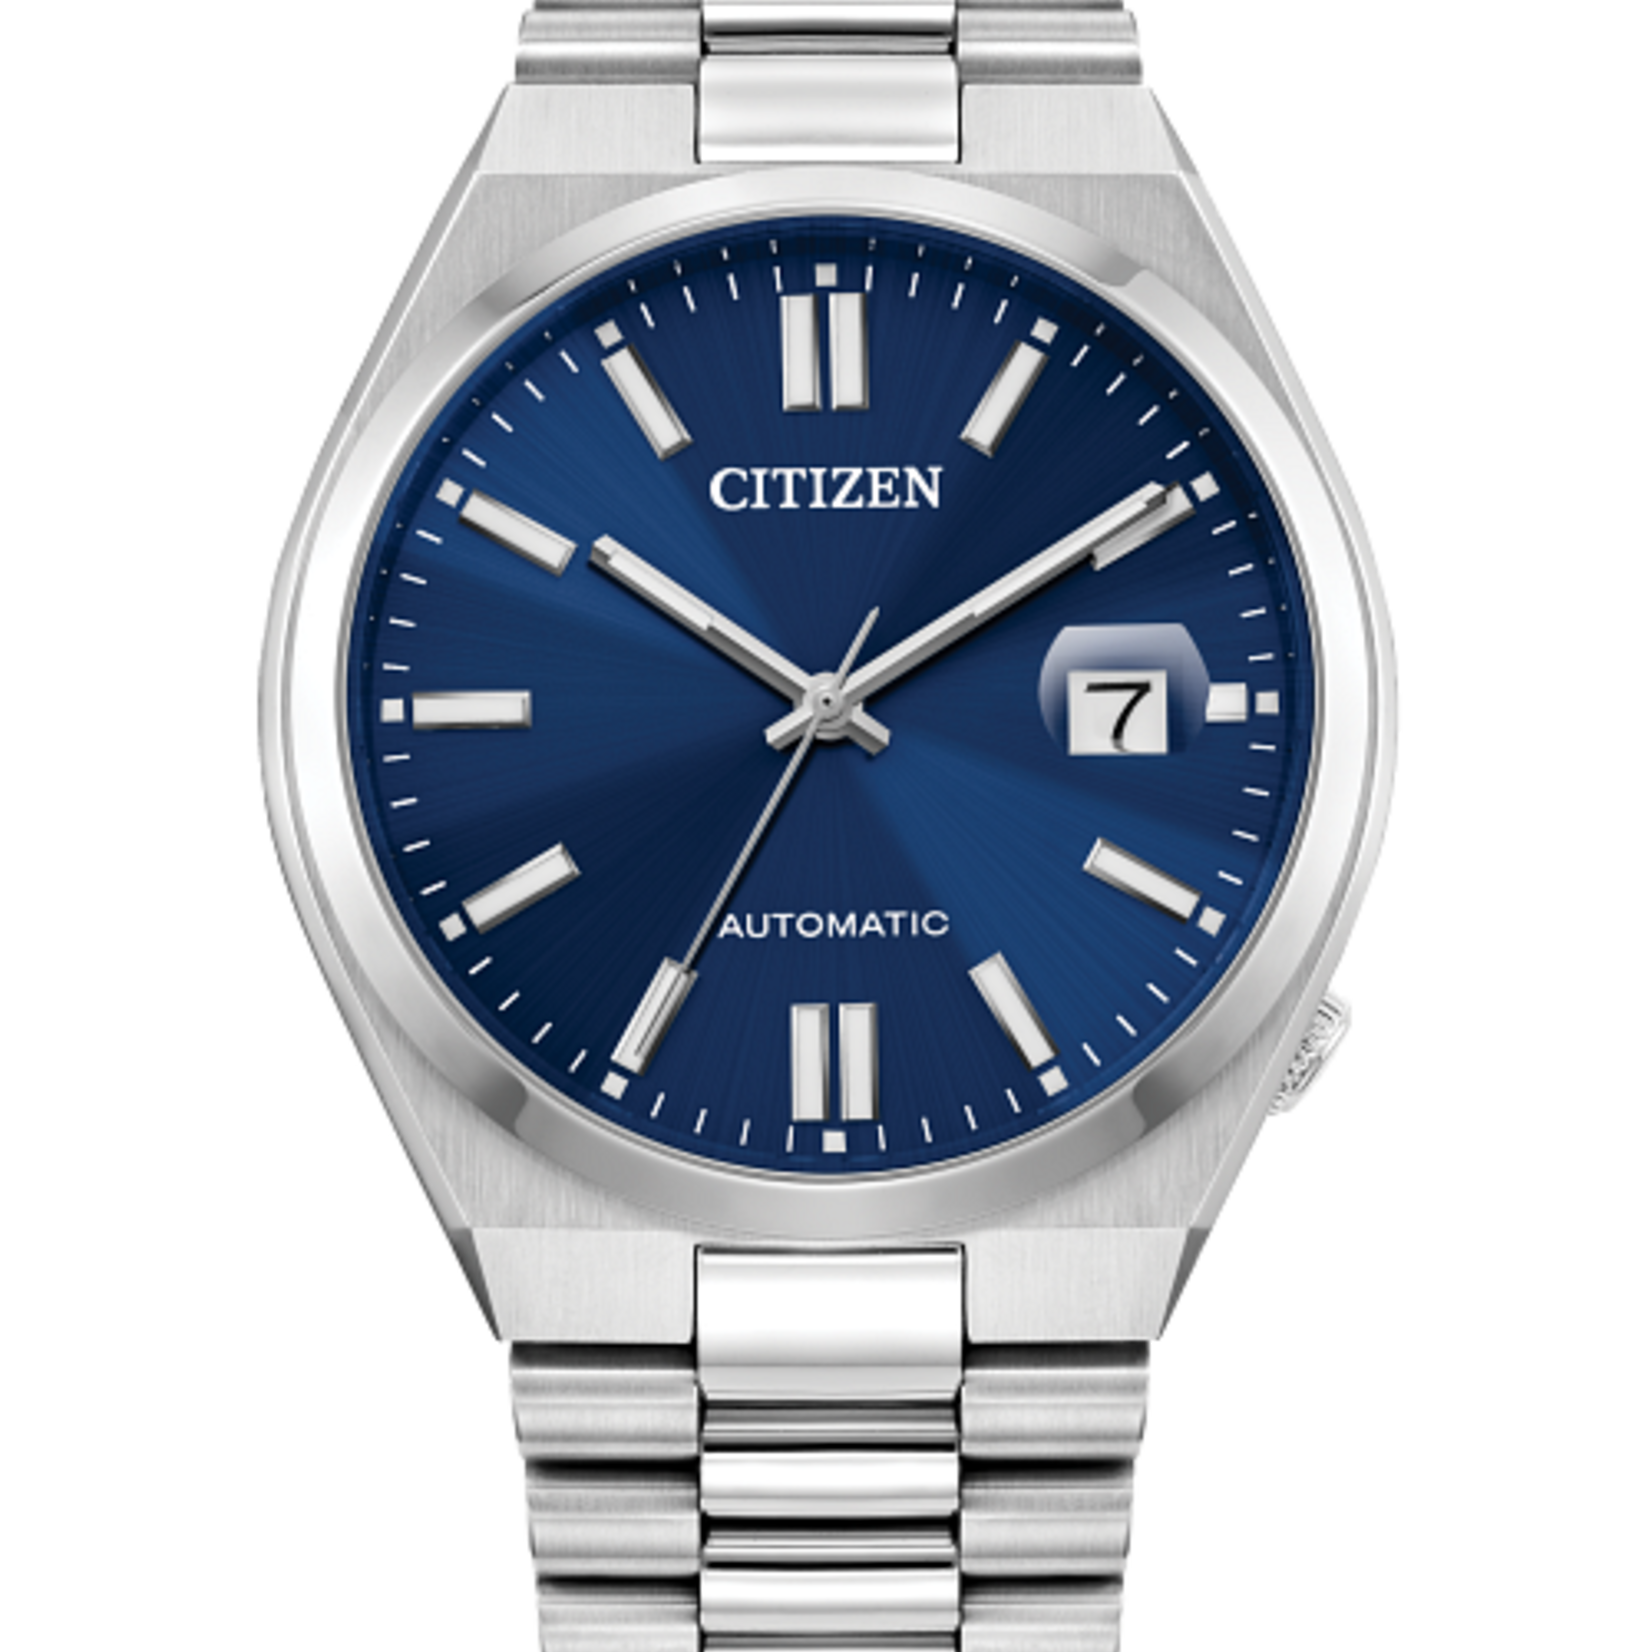 Citizen Watches “TSUYOSA” Collection